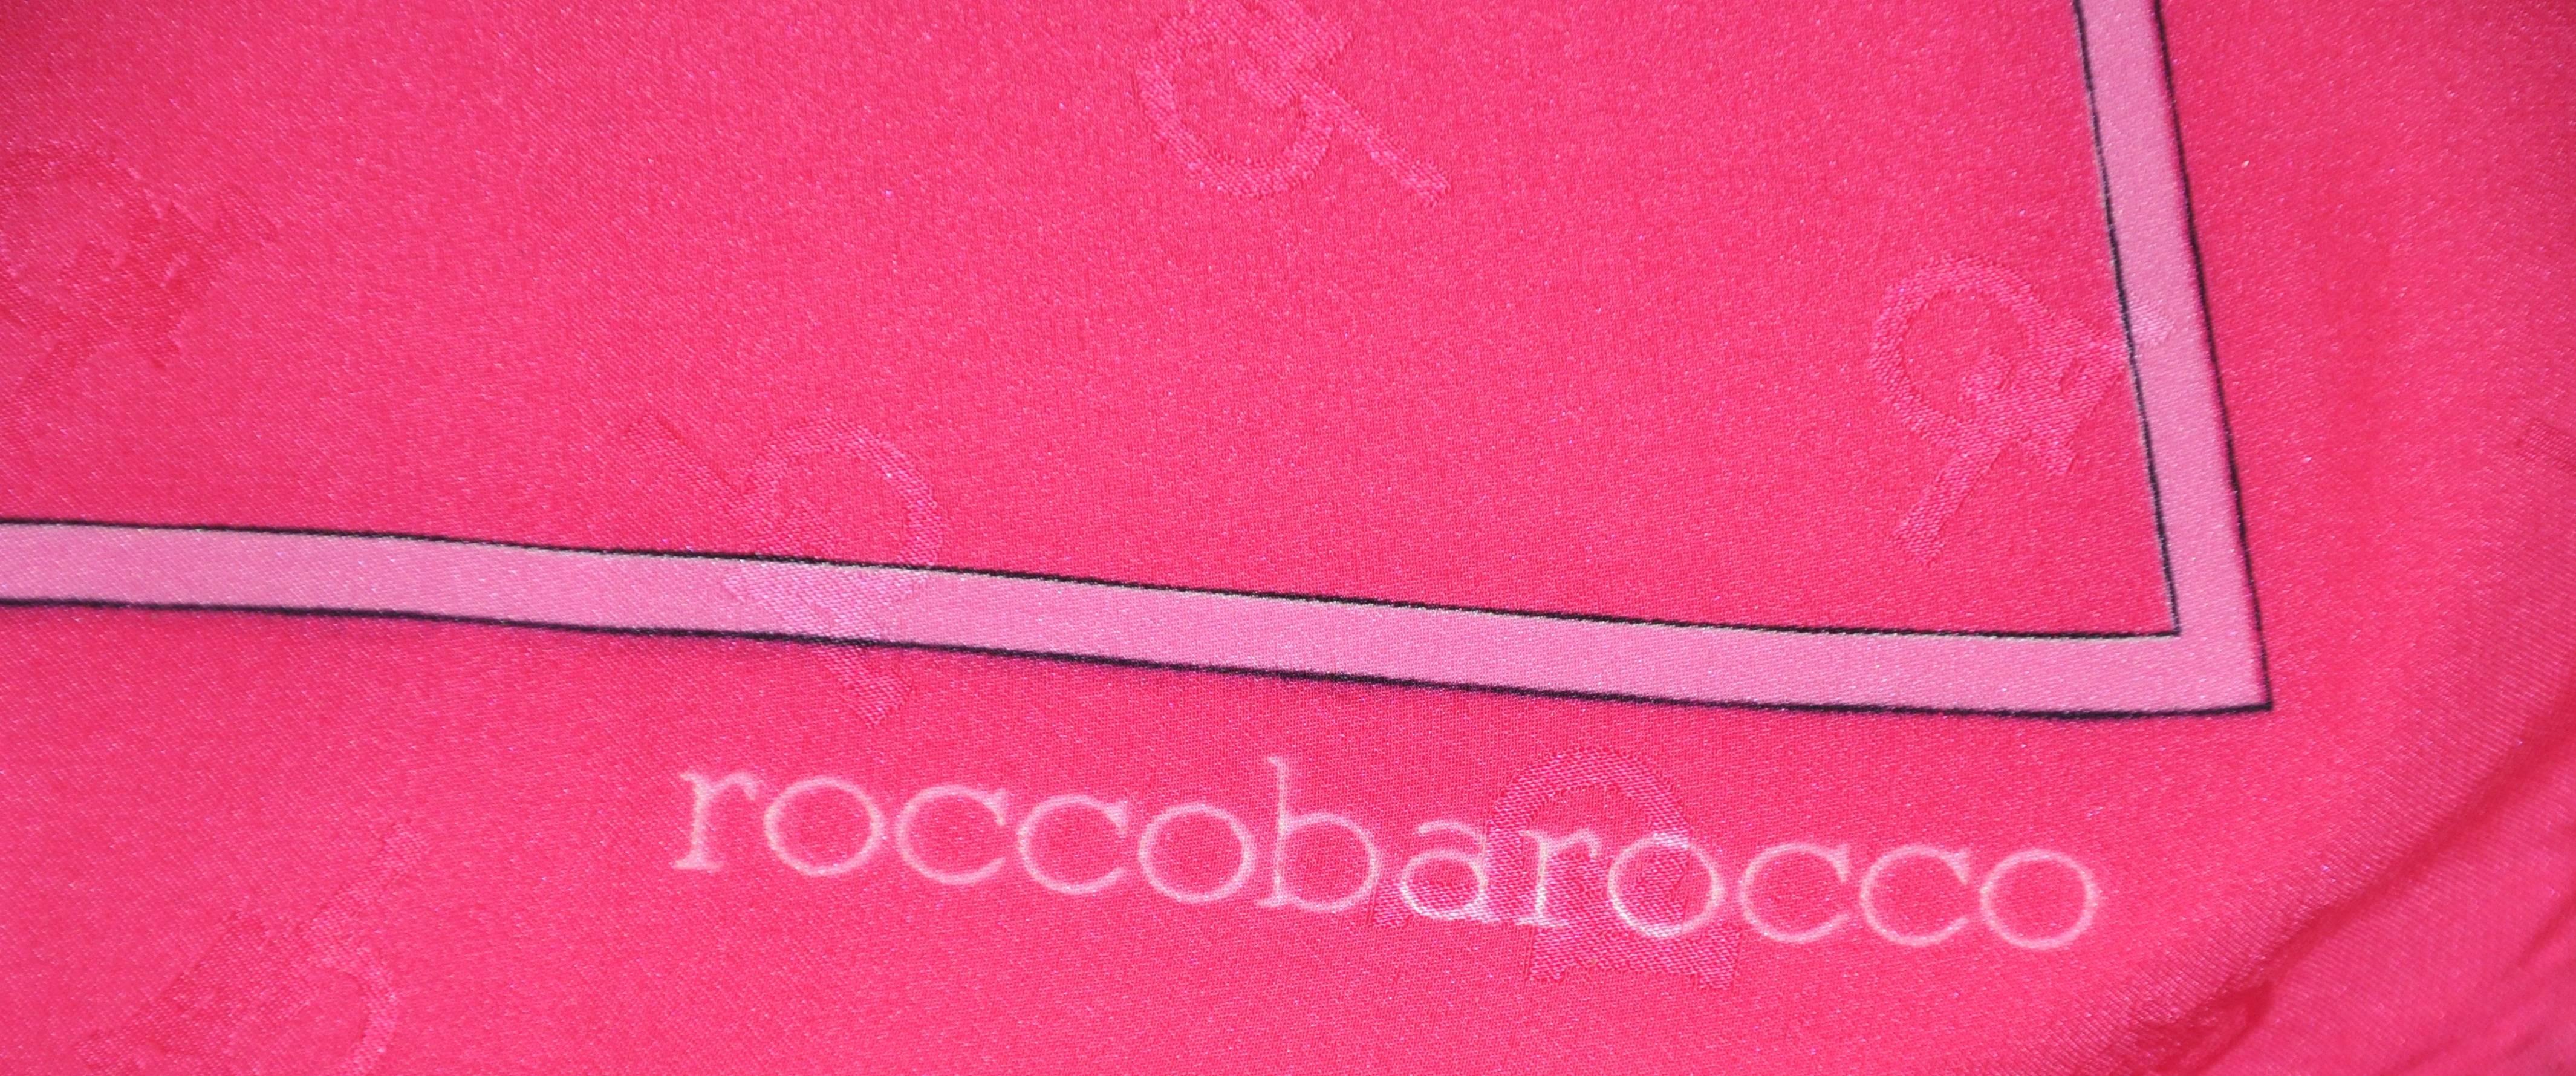 Rose Roccobarocco - Écharpe en crêpe de Chine de soie avec monogramme et imprimé fuchsia vif et audacieux en vente